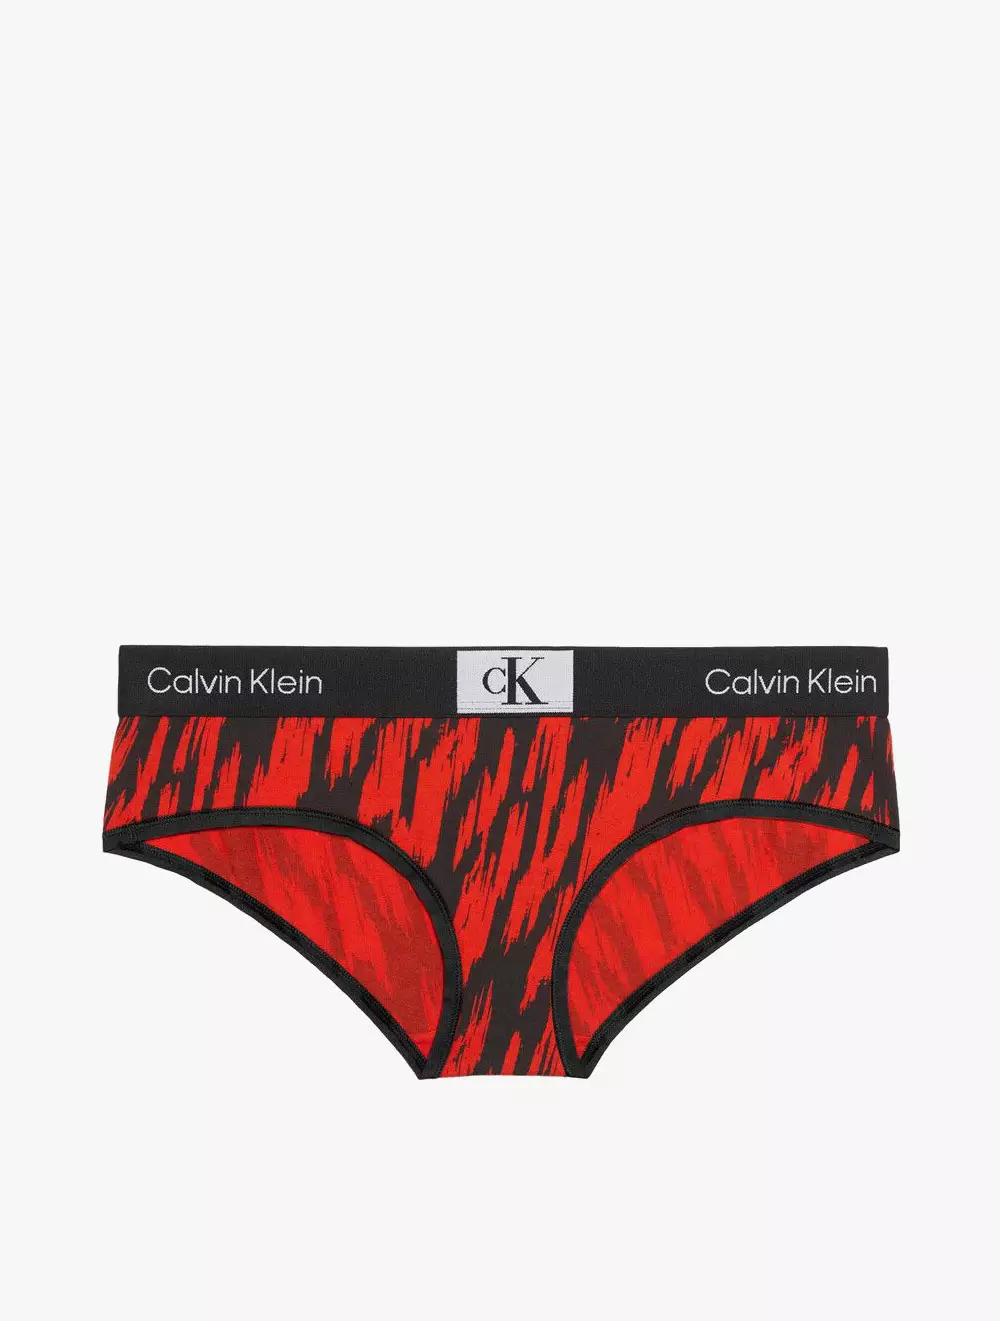 Jual CALVIN KLEIN Calvin Klein Underwear - CALVIN KLEIN 1996 HIPSTER - Red  Original 2024